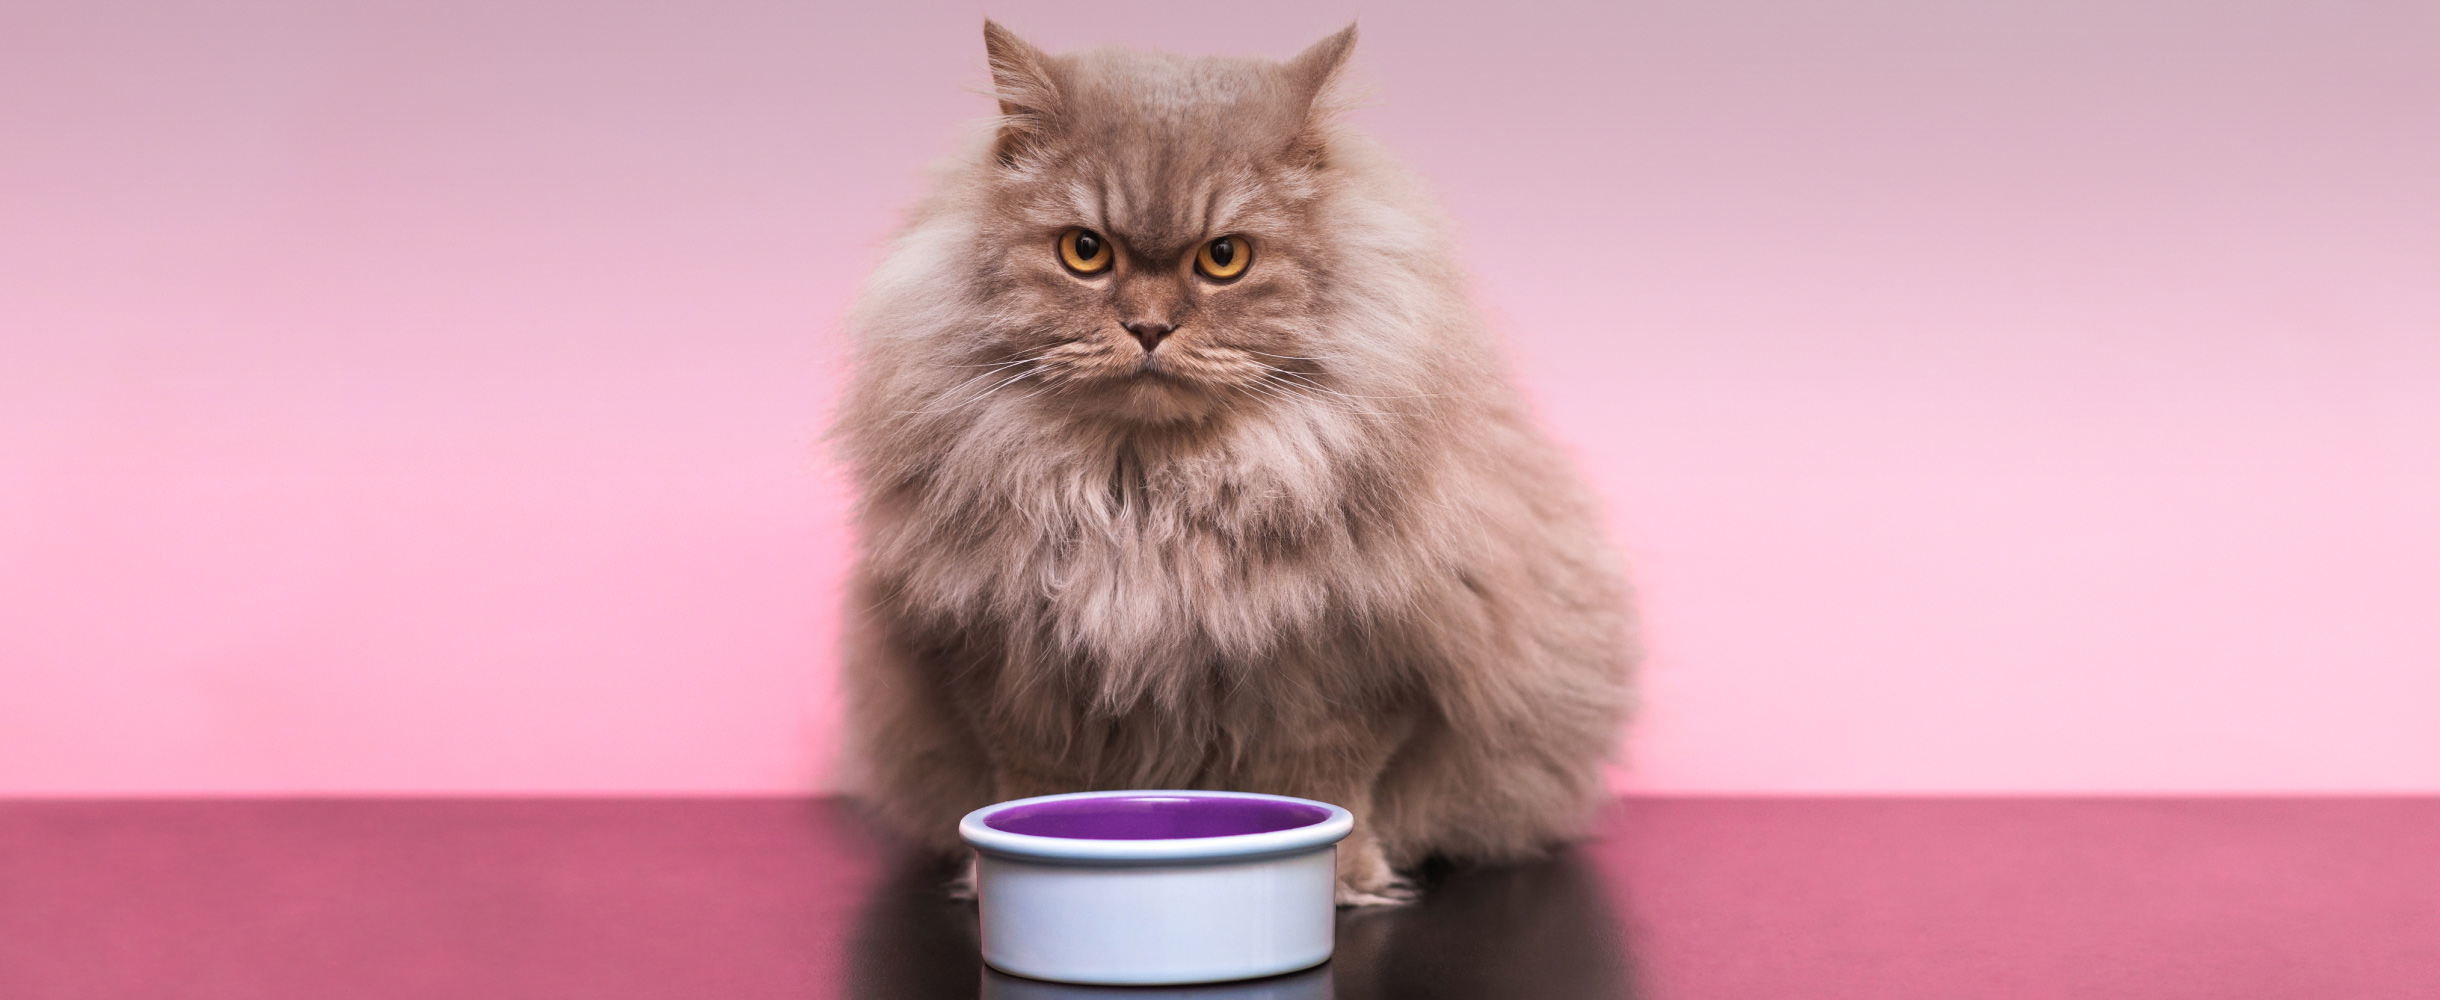 Лучшие корма для кошек: топ-9 по мнению ветеринаров